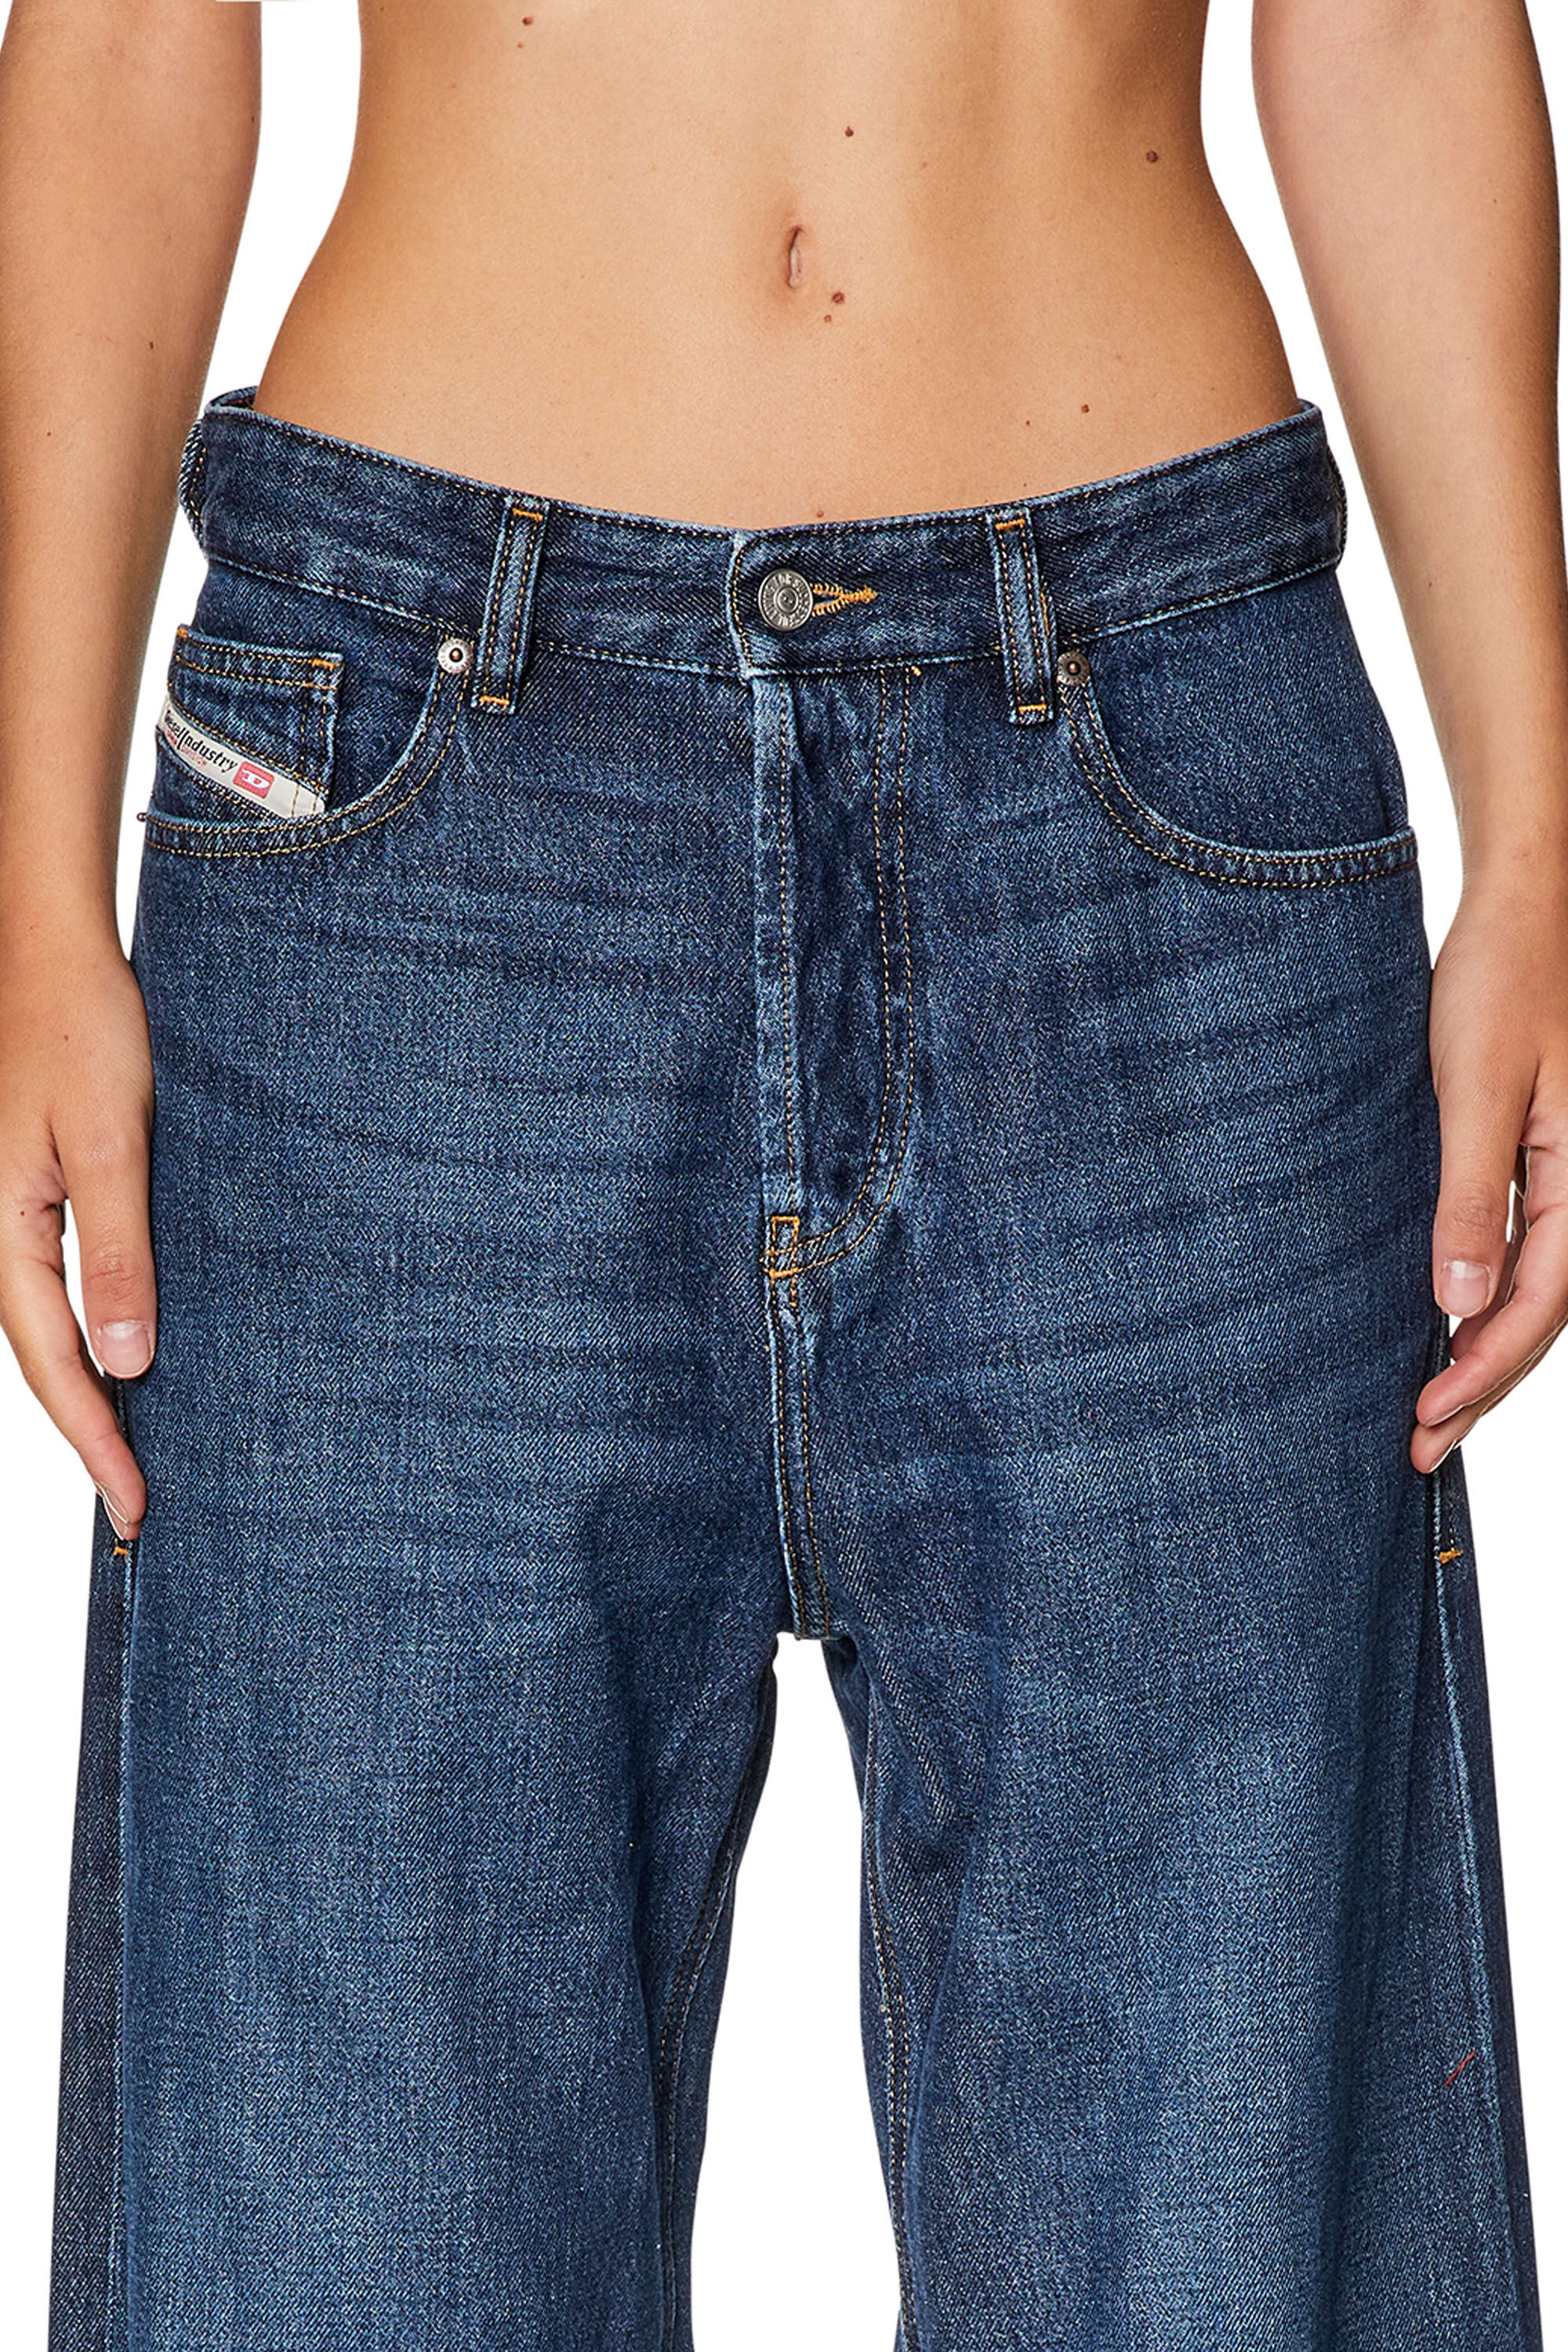 日本激安DIESEL D-SIRE straight jeans 1996 OEMAN パンツ